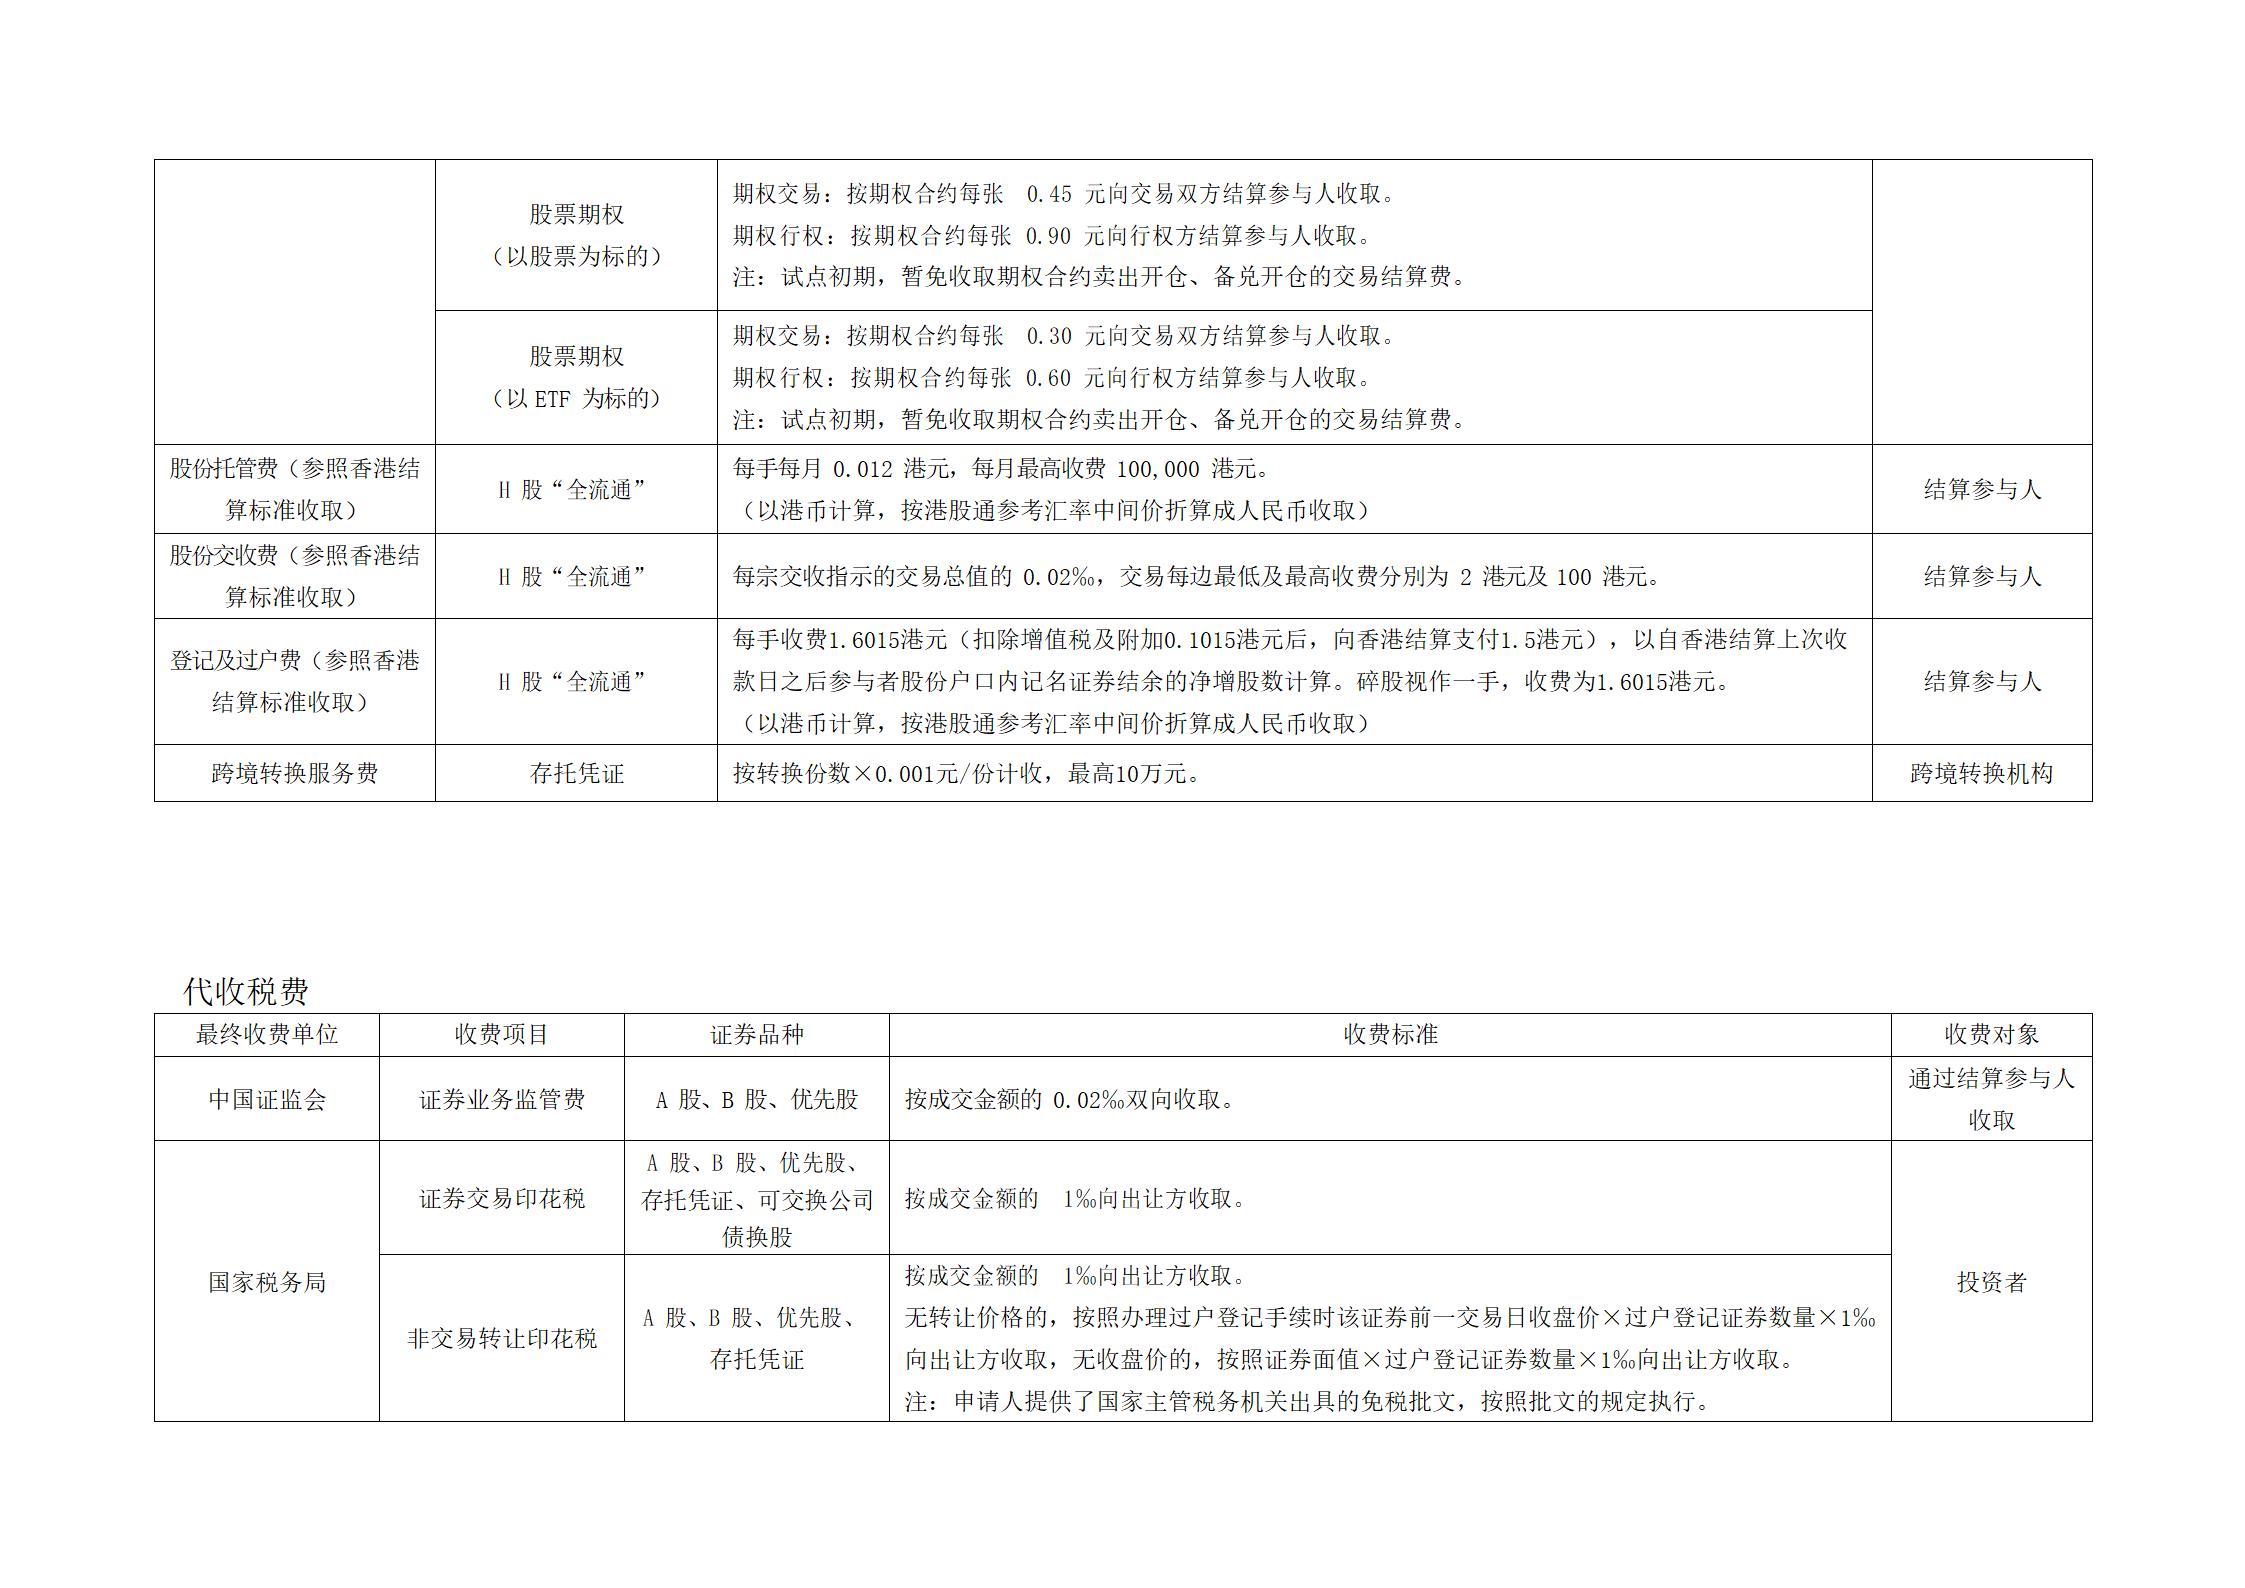 深圳市场证券登记结算业务收费及代收税费一览表 (1)_07.jpg